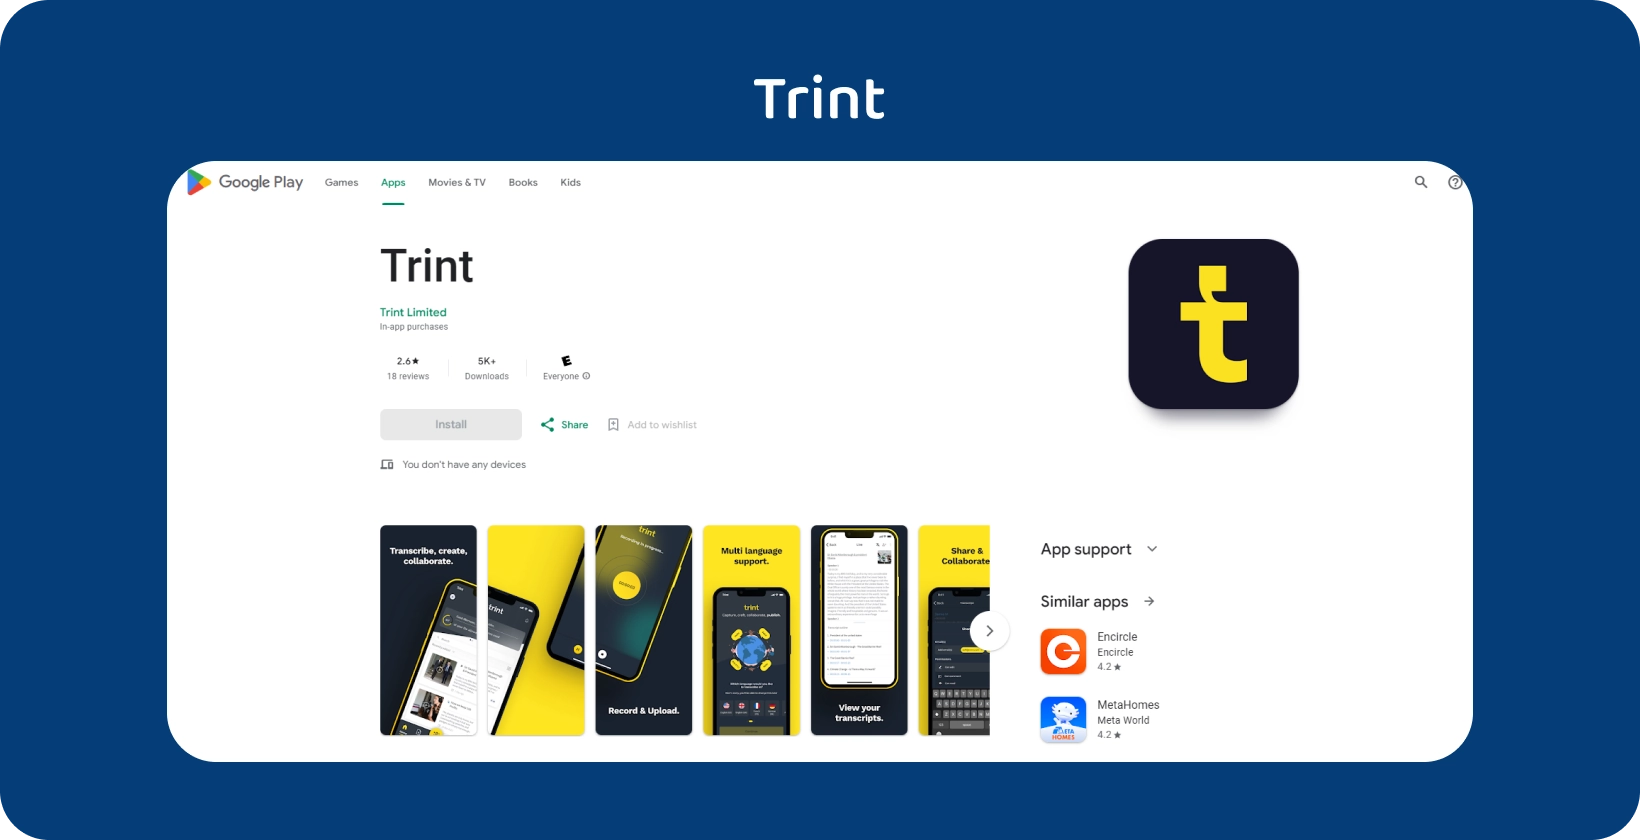 אפליקציית Trint המוצגת ב- Google Play, המדגישה את שירותי התמלול שלה עם ממשק נייד אינטואיטיבי.